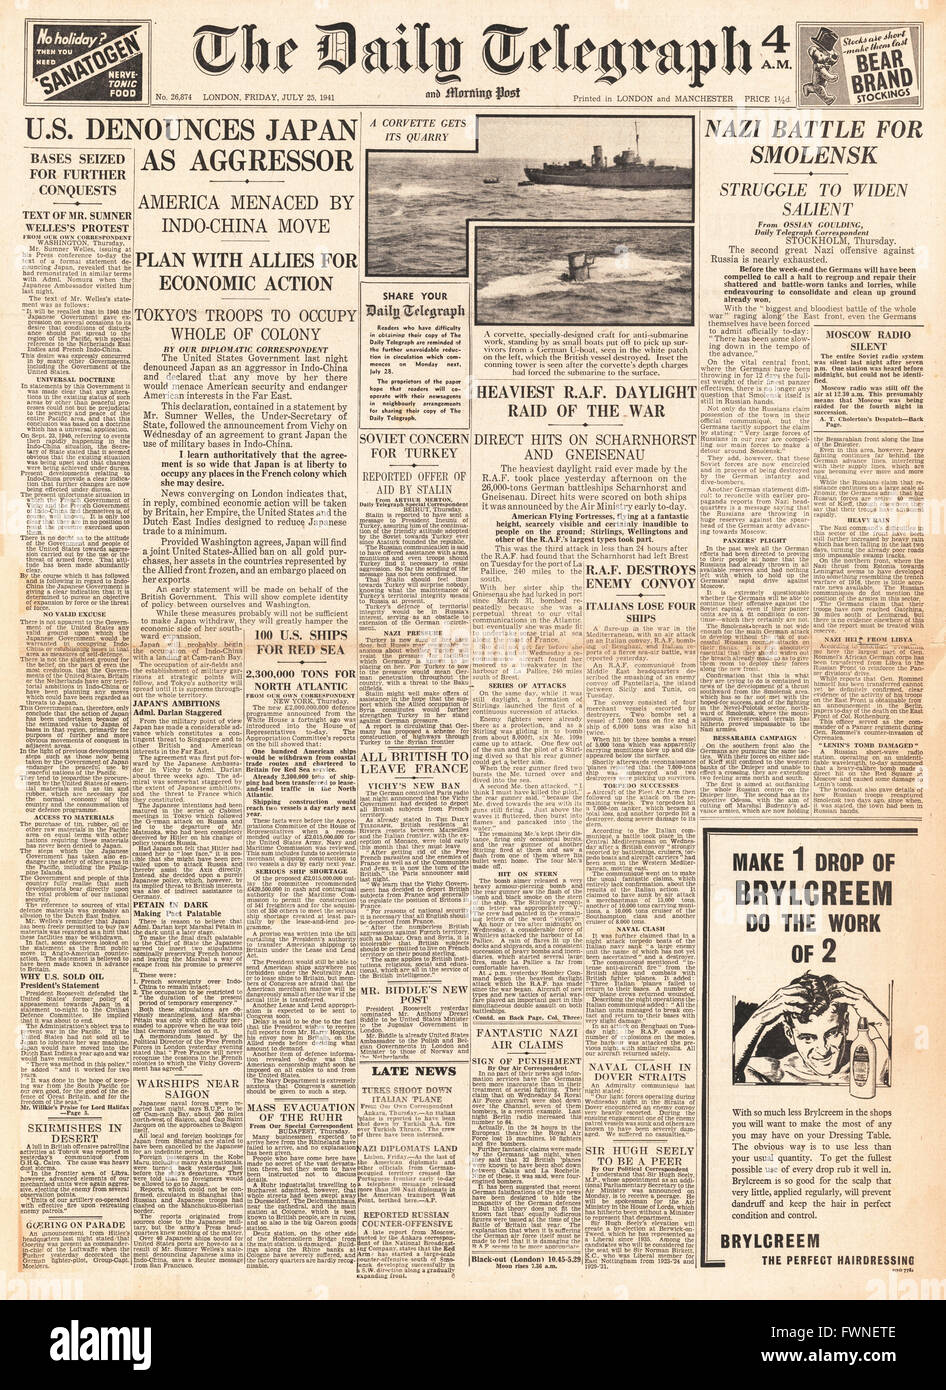 1941-Titelseite Daily Telegraph US prangert Japan als Aggressor, Schlacht um Smolensk und RAF Tageslicht Angriff auf Brest Stockfoto